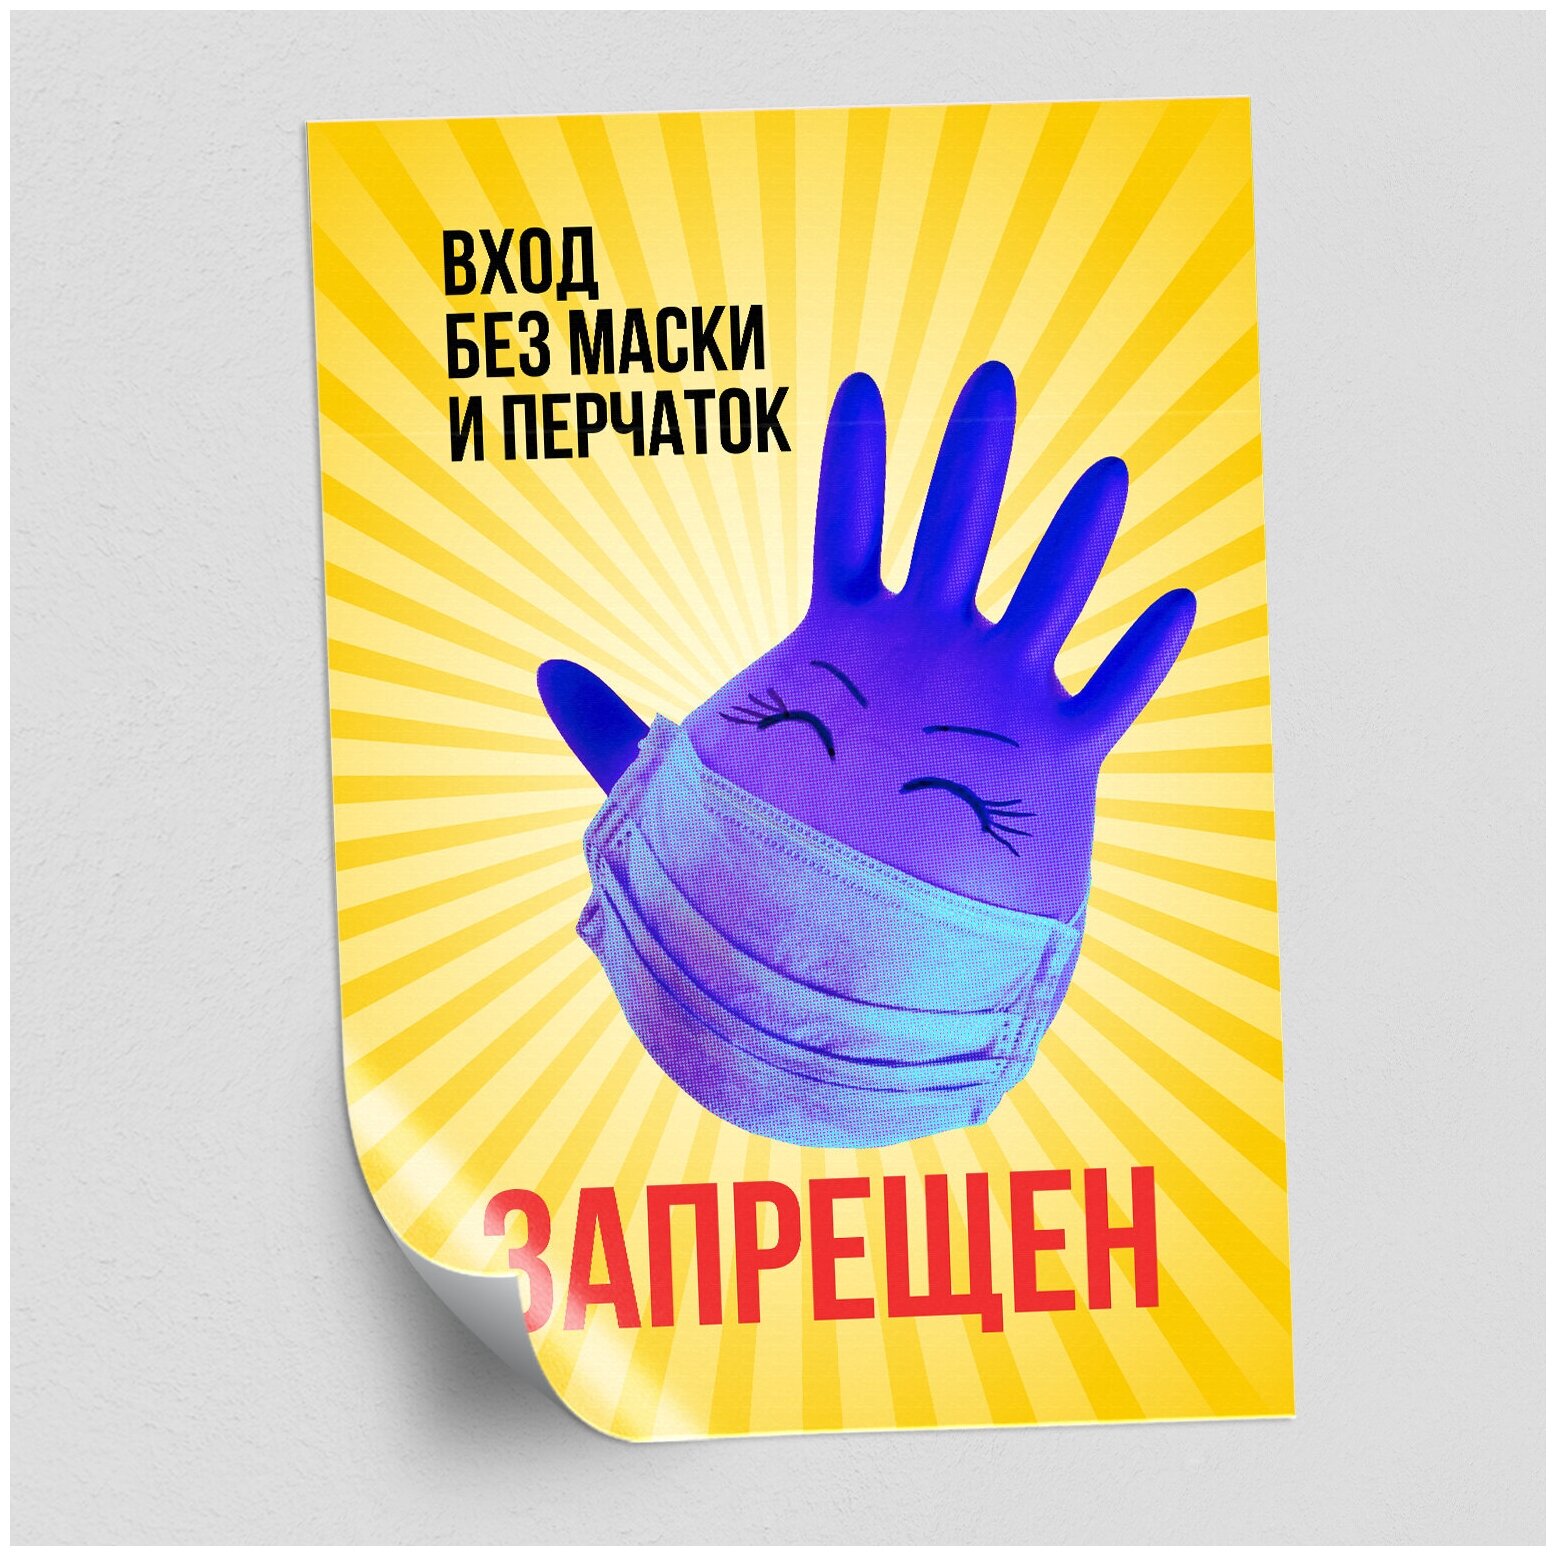 Наклейка "Вход без маски и перчаток запрещен" / формат А-4 (21x30 см.)